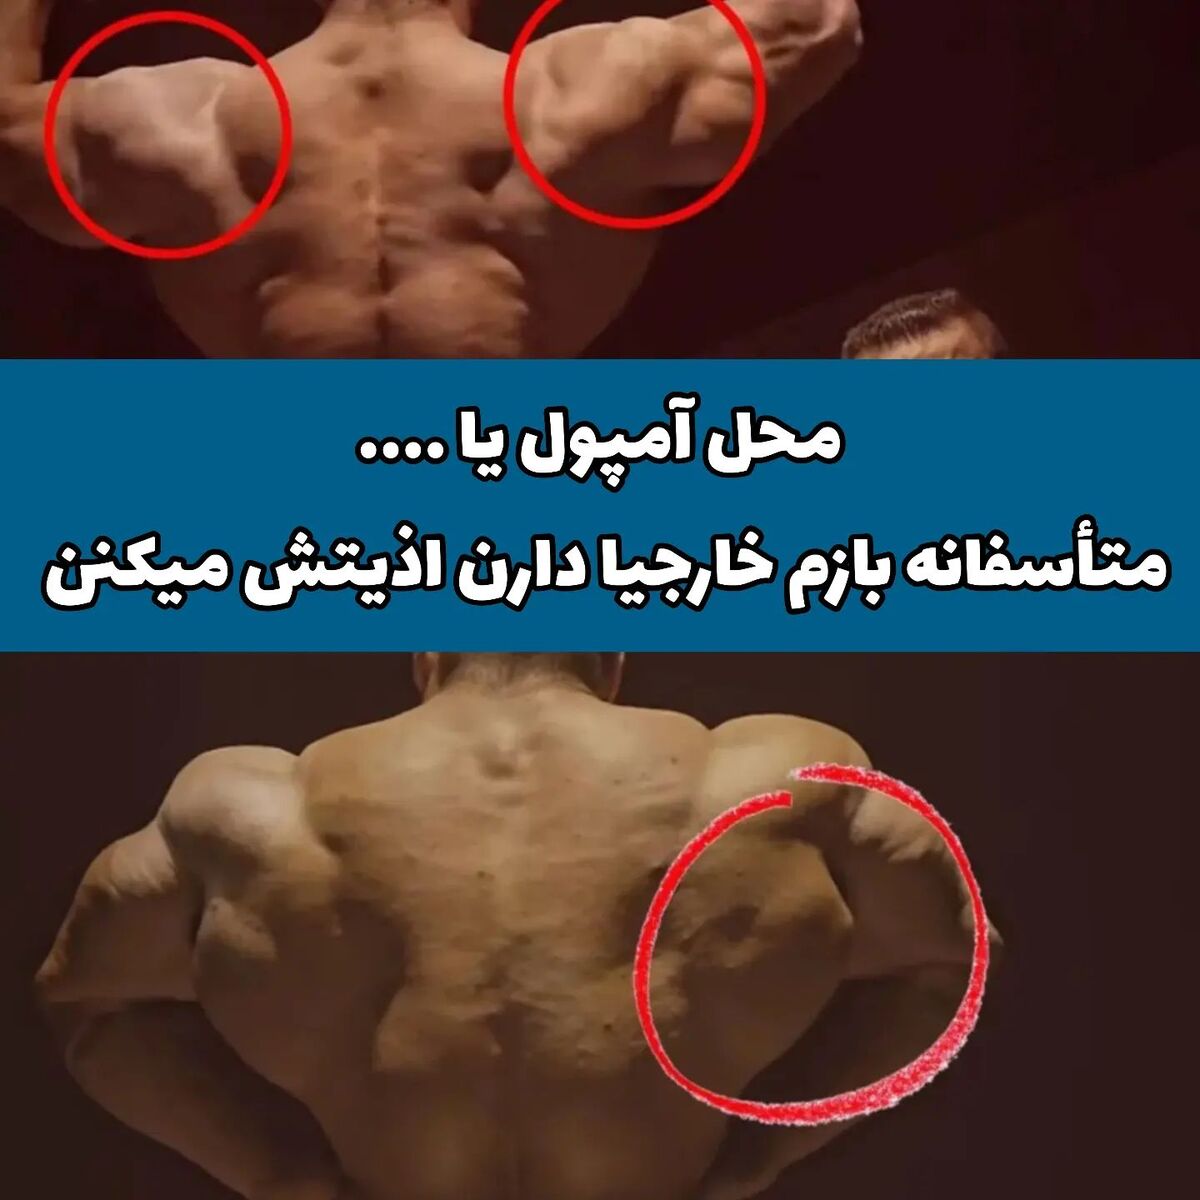 عکس| اتهام باورنکردنی بدنساز مشهور علیه هادی چوپان؛ گرگ ایرانی سینتول تزریق کرده!